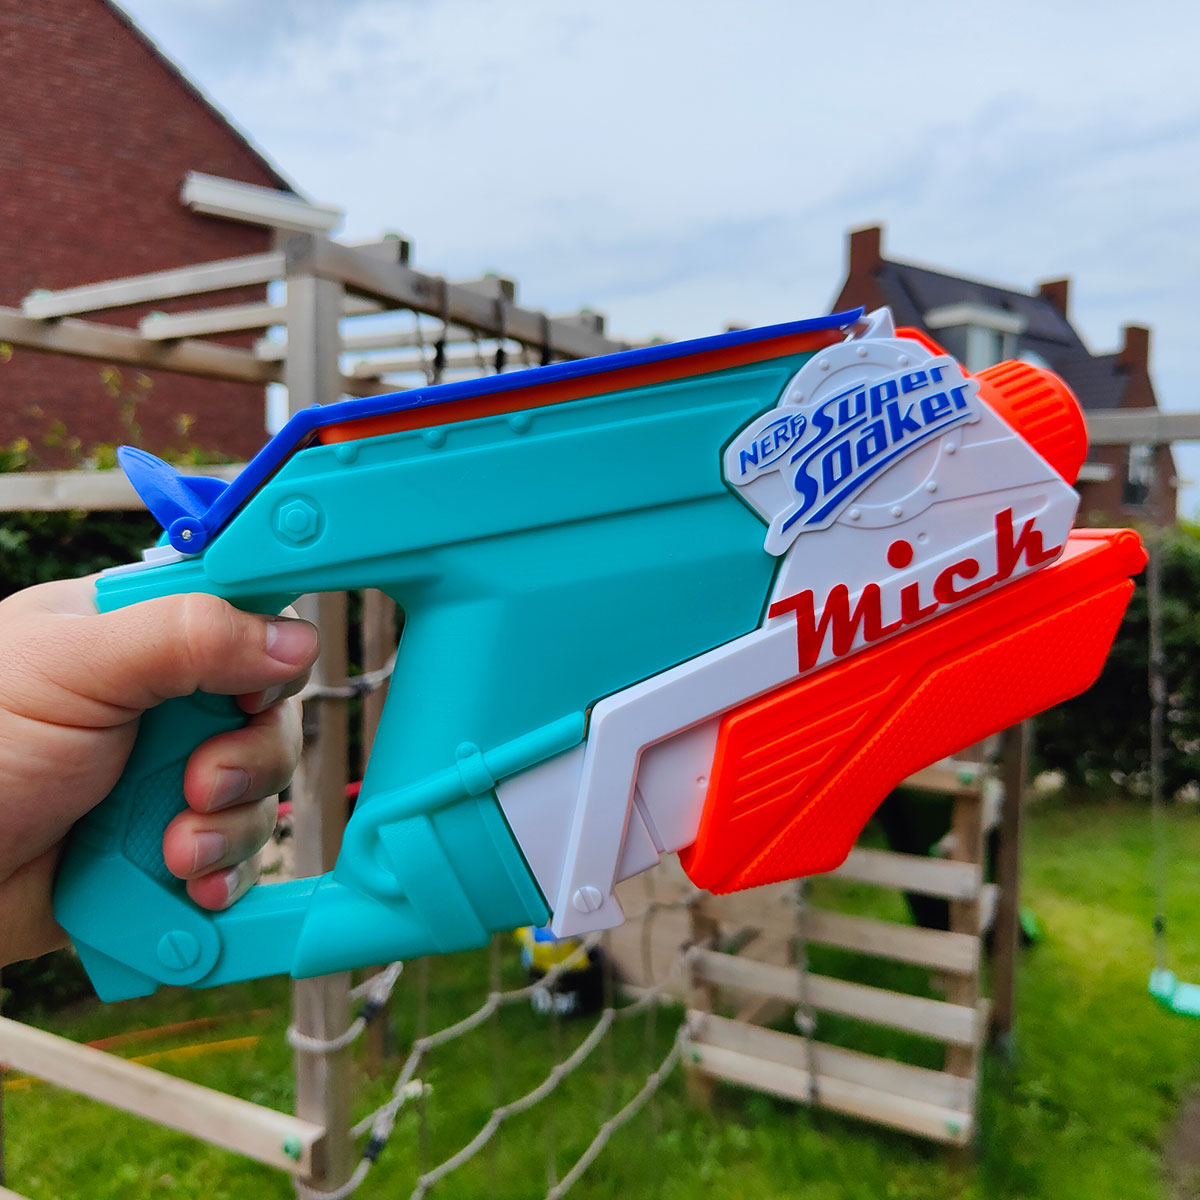 Nerf Soaker Splash Mouth waterpistool met 66% foutmarge! - GadgetGear.nl